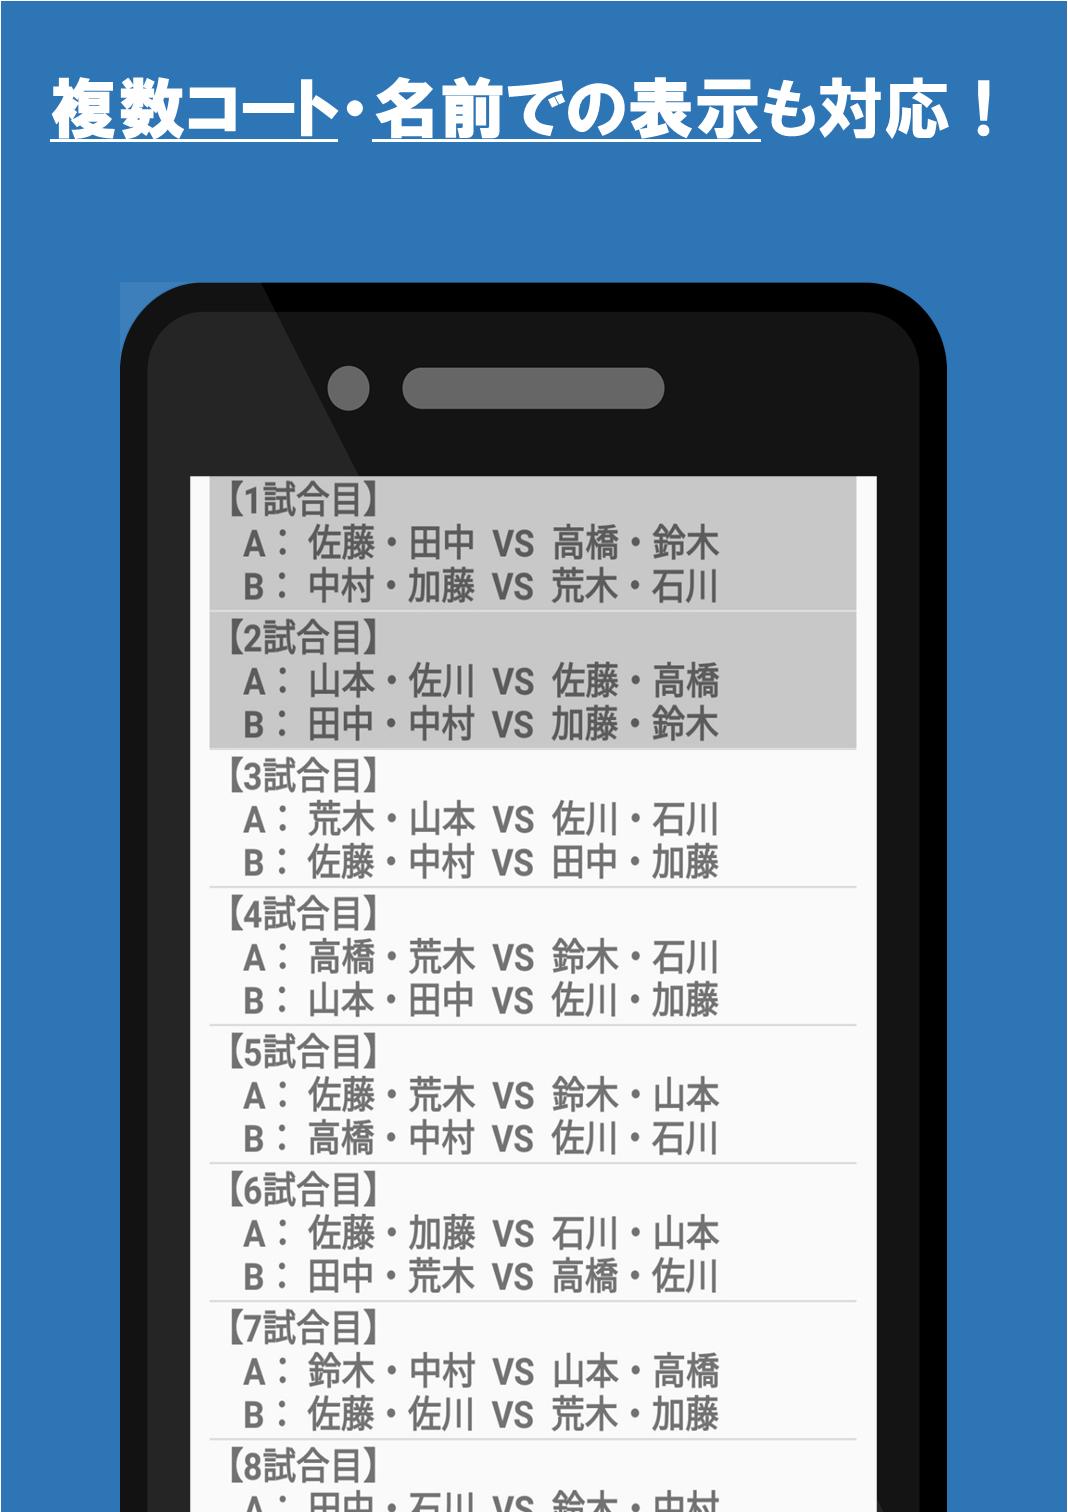 Android 用の ダブルス組み合わせ 乱数表 テニス バドミントン 卓球などダブルス競技に Apk をダウンロード